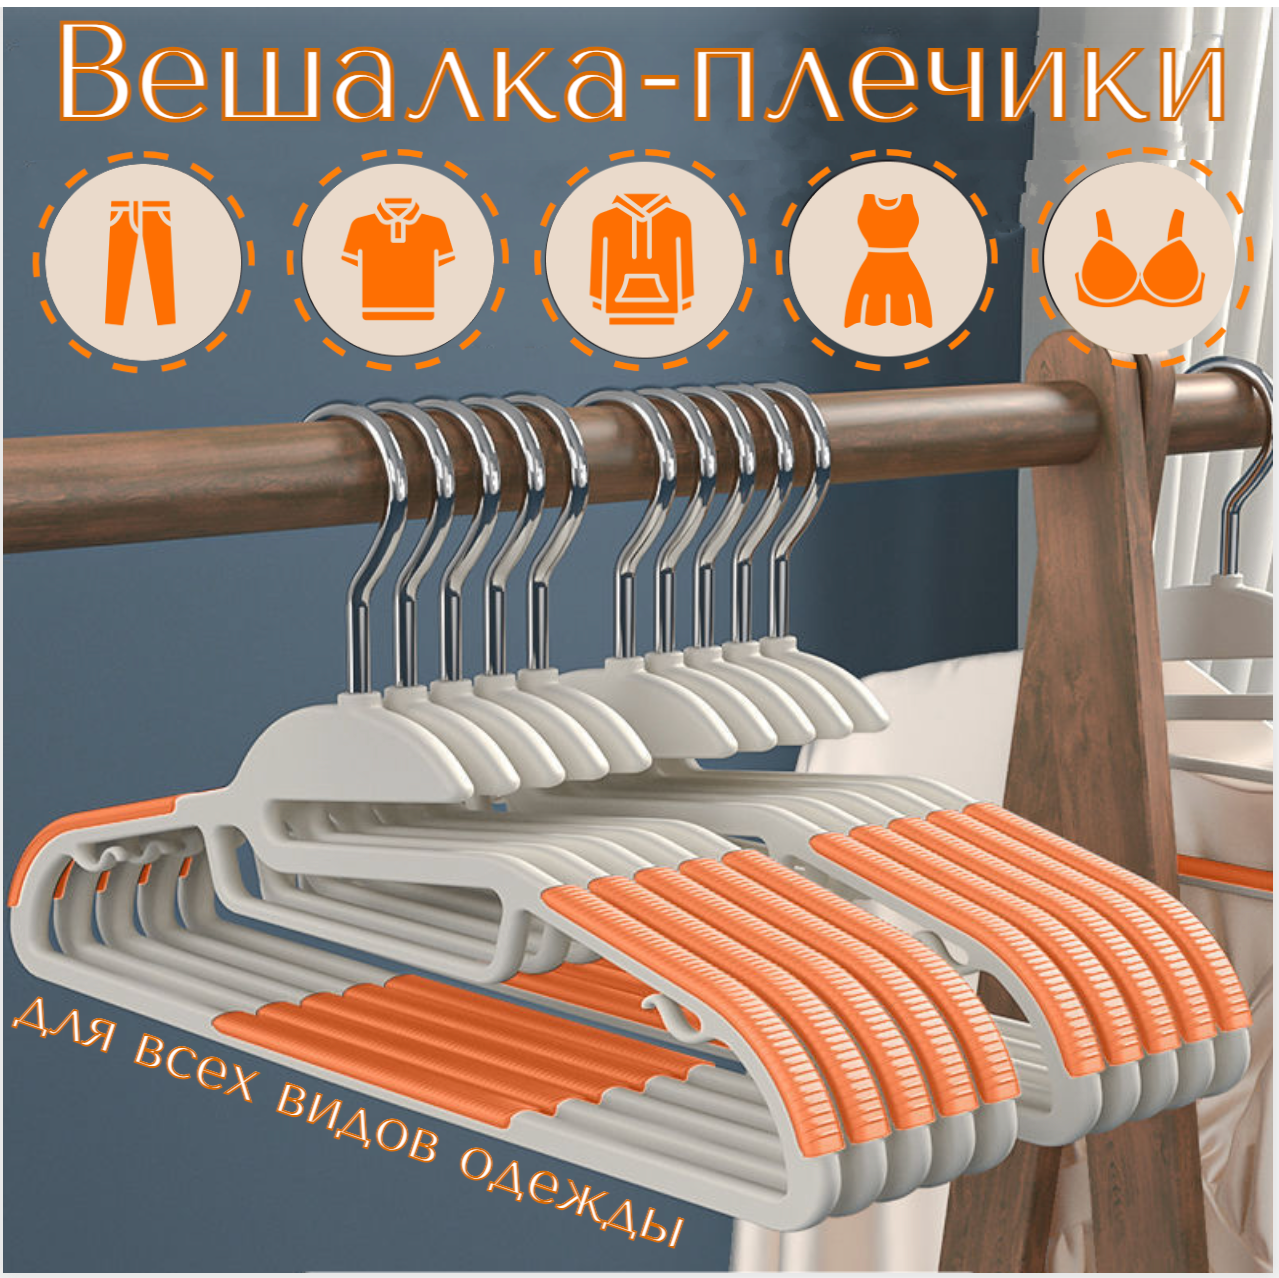 Вешалка для одежды, набор плечиков с нескользящим покрытием и вырезом под ворот, 10 штук, оранжевыезом